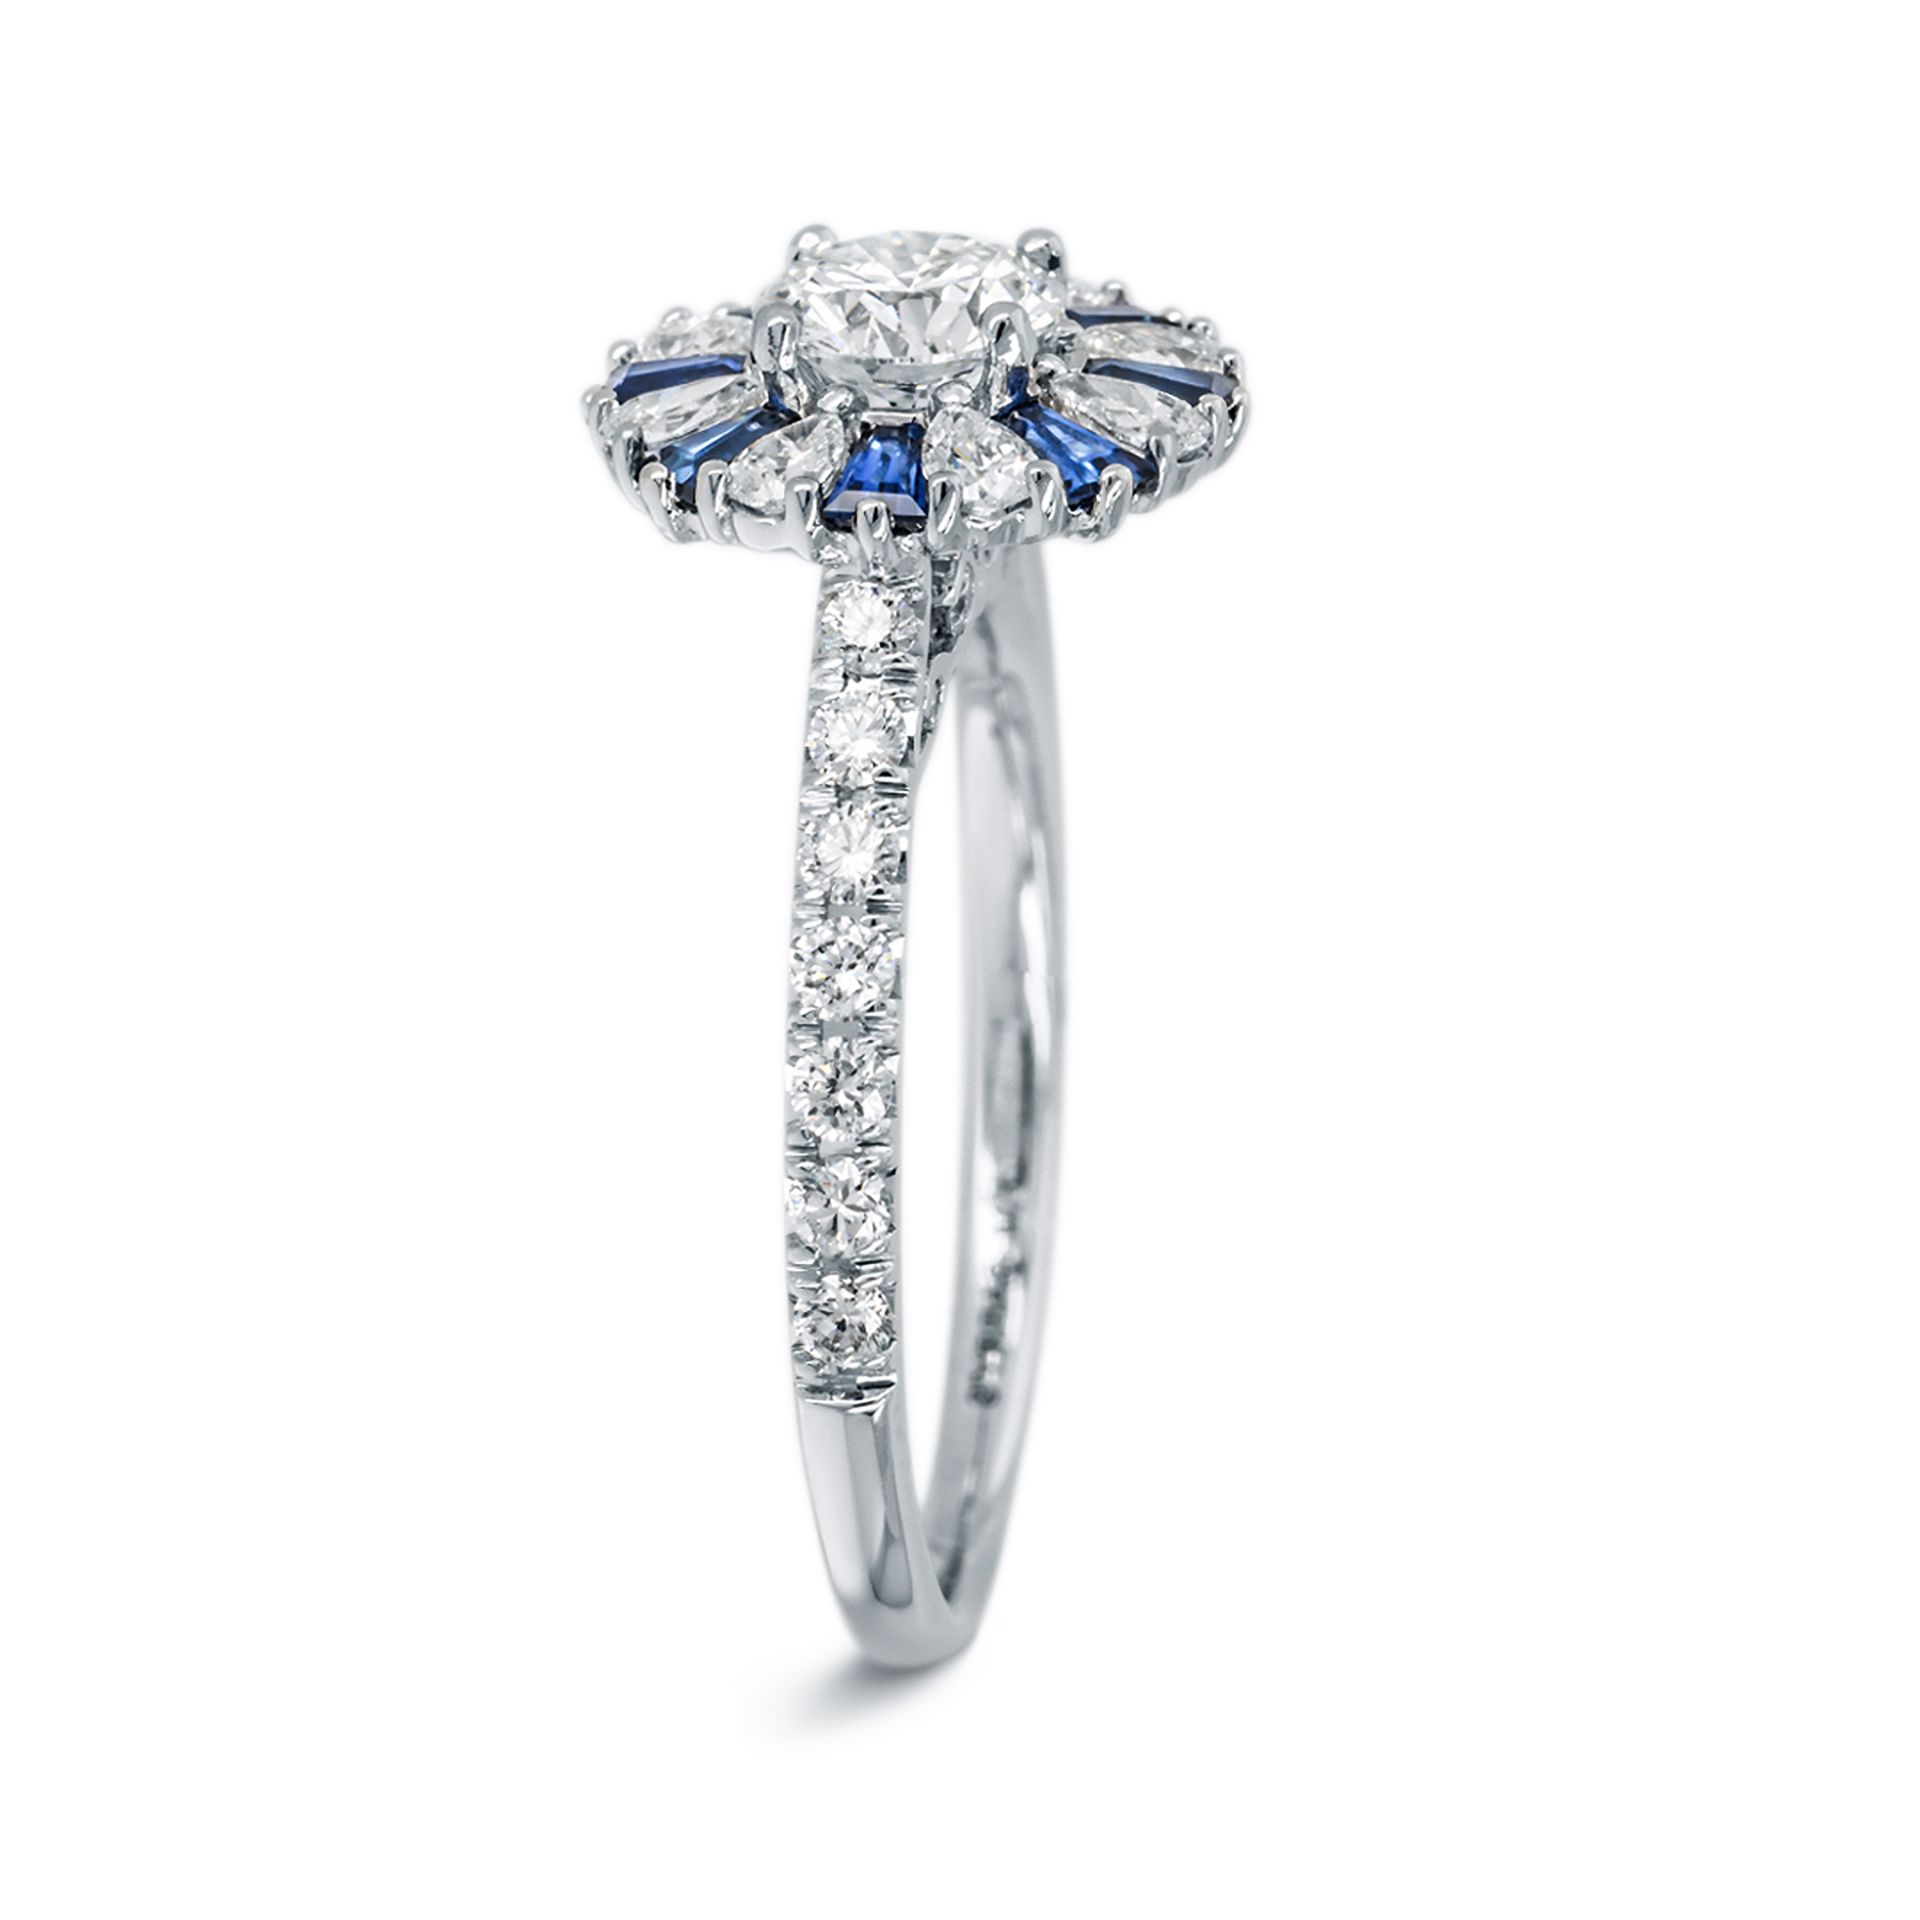 Verlobungsring 18 Karat Weißgold und Diamanten | Engagement Ring 18 Karat White Gold und Diamonds - Image 3 of 4